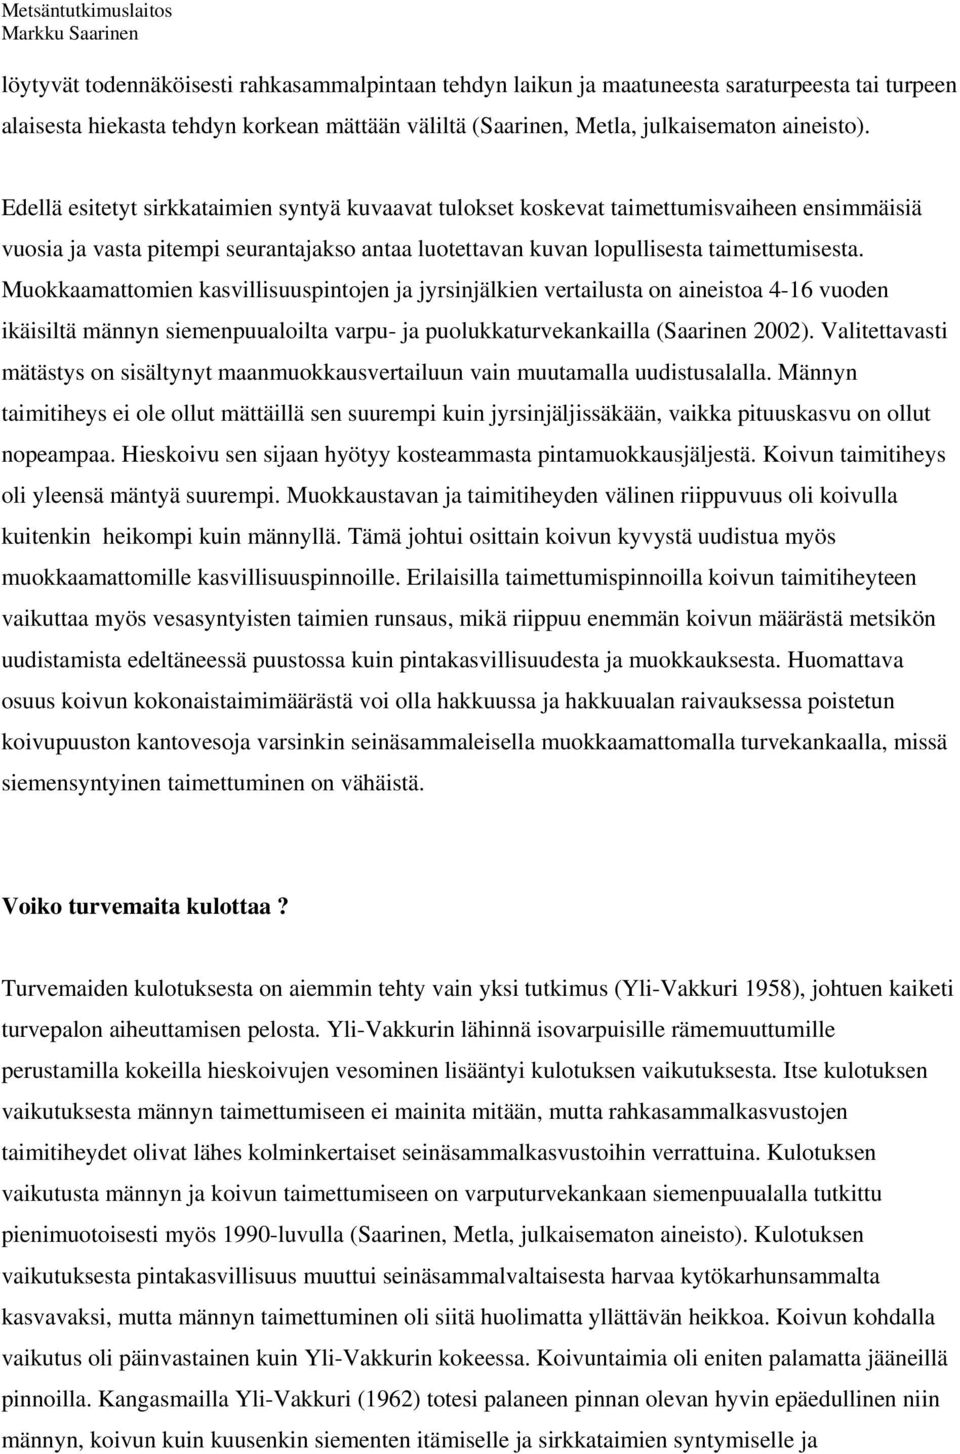 Muokkaamattomien kasvillisuuspintojen ja jyrsinjälkien vertailusta on aineistoa 4-16 vuoden ikäisiltä männyn siemenpuualoilta varpu- ja puolukkaturvekankailla (Saarinen 2002).